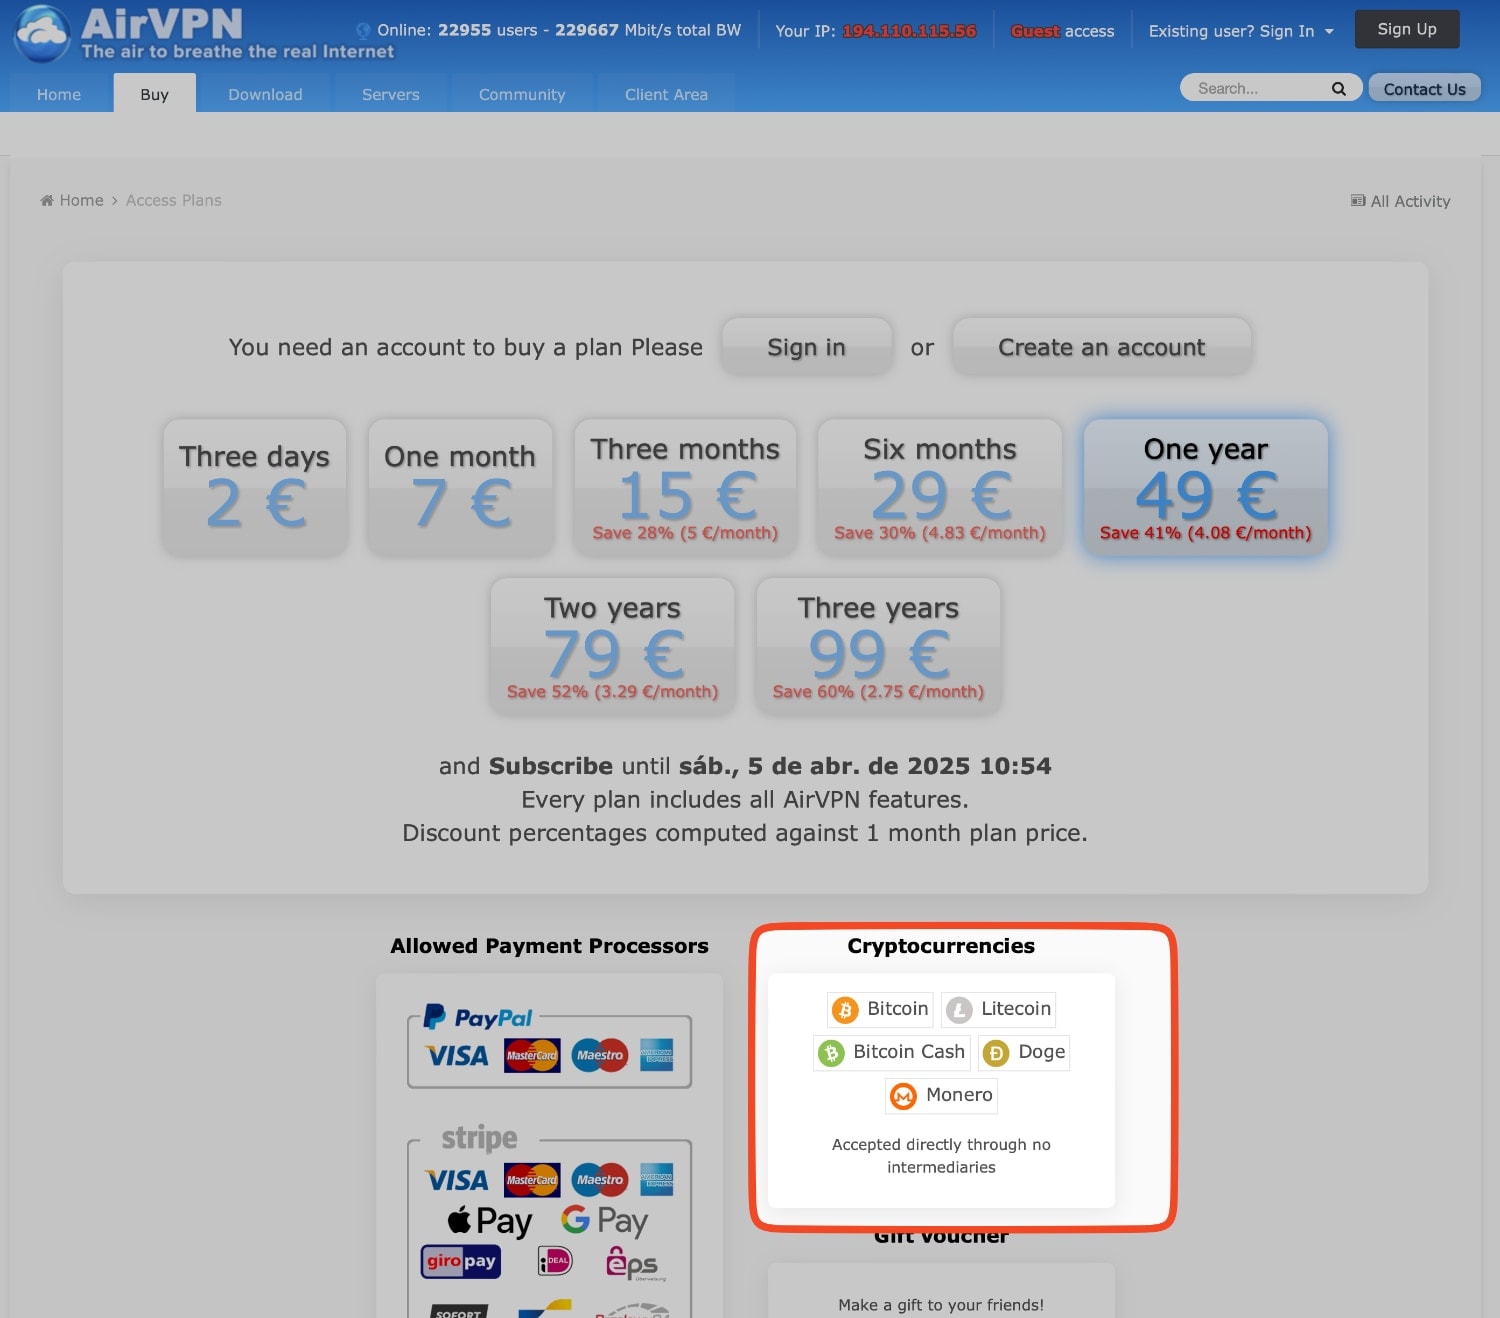 AirVPN: Su precio es excelente y ofrecen muchas opciones de pago, incluidas varias criptomonedas como Bitcoin, Ethereum, Litecoin, Bitcoin Cash, Dash, Doge, Monero: